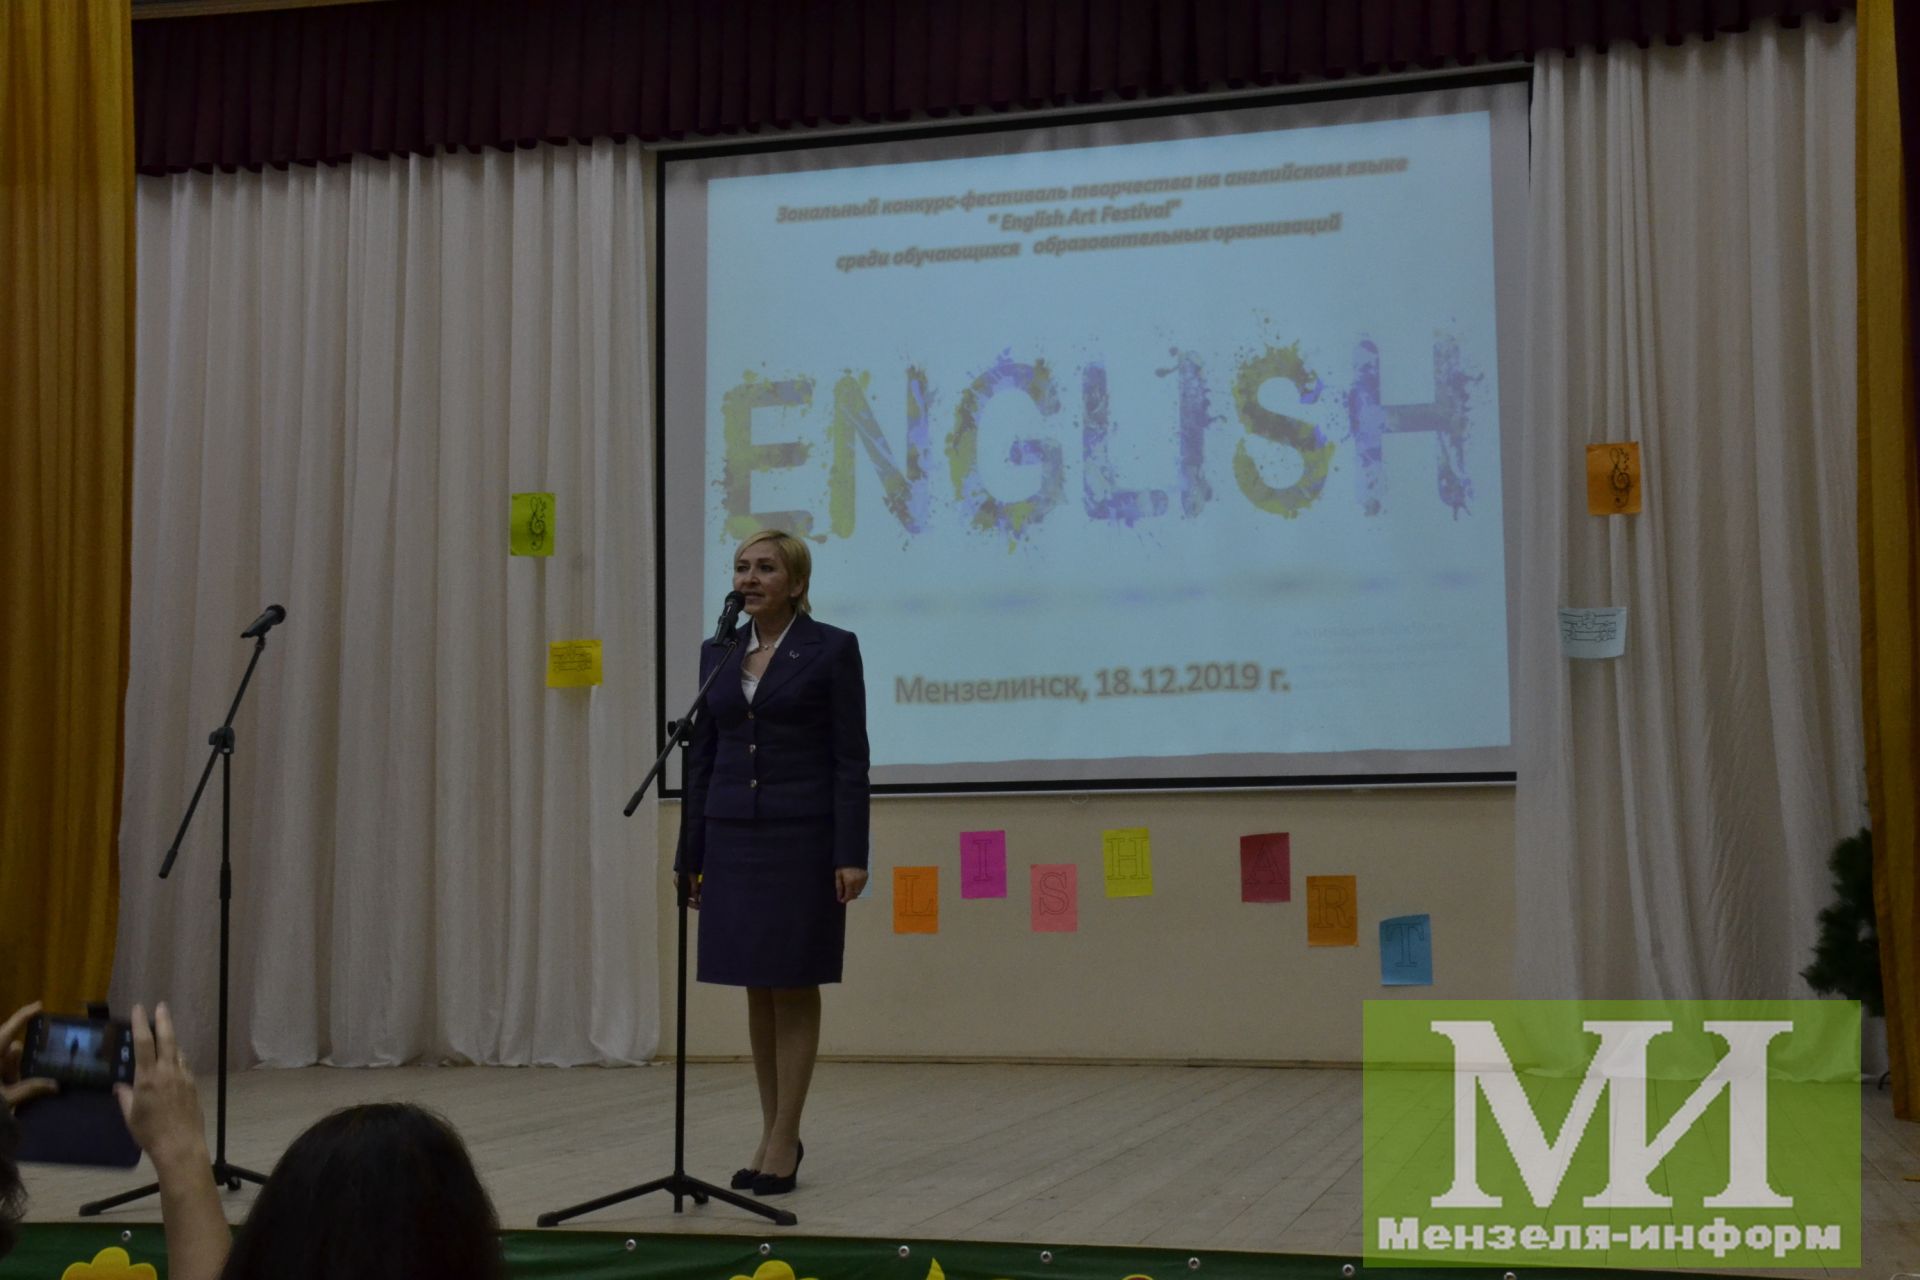 В гимназии прошёл открытый фестиваль детского творчества на английском языке «English Art Festival»